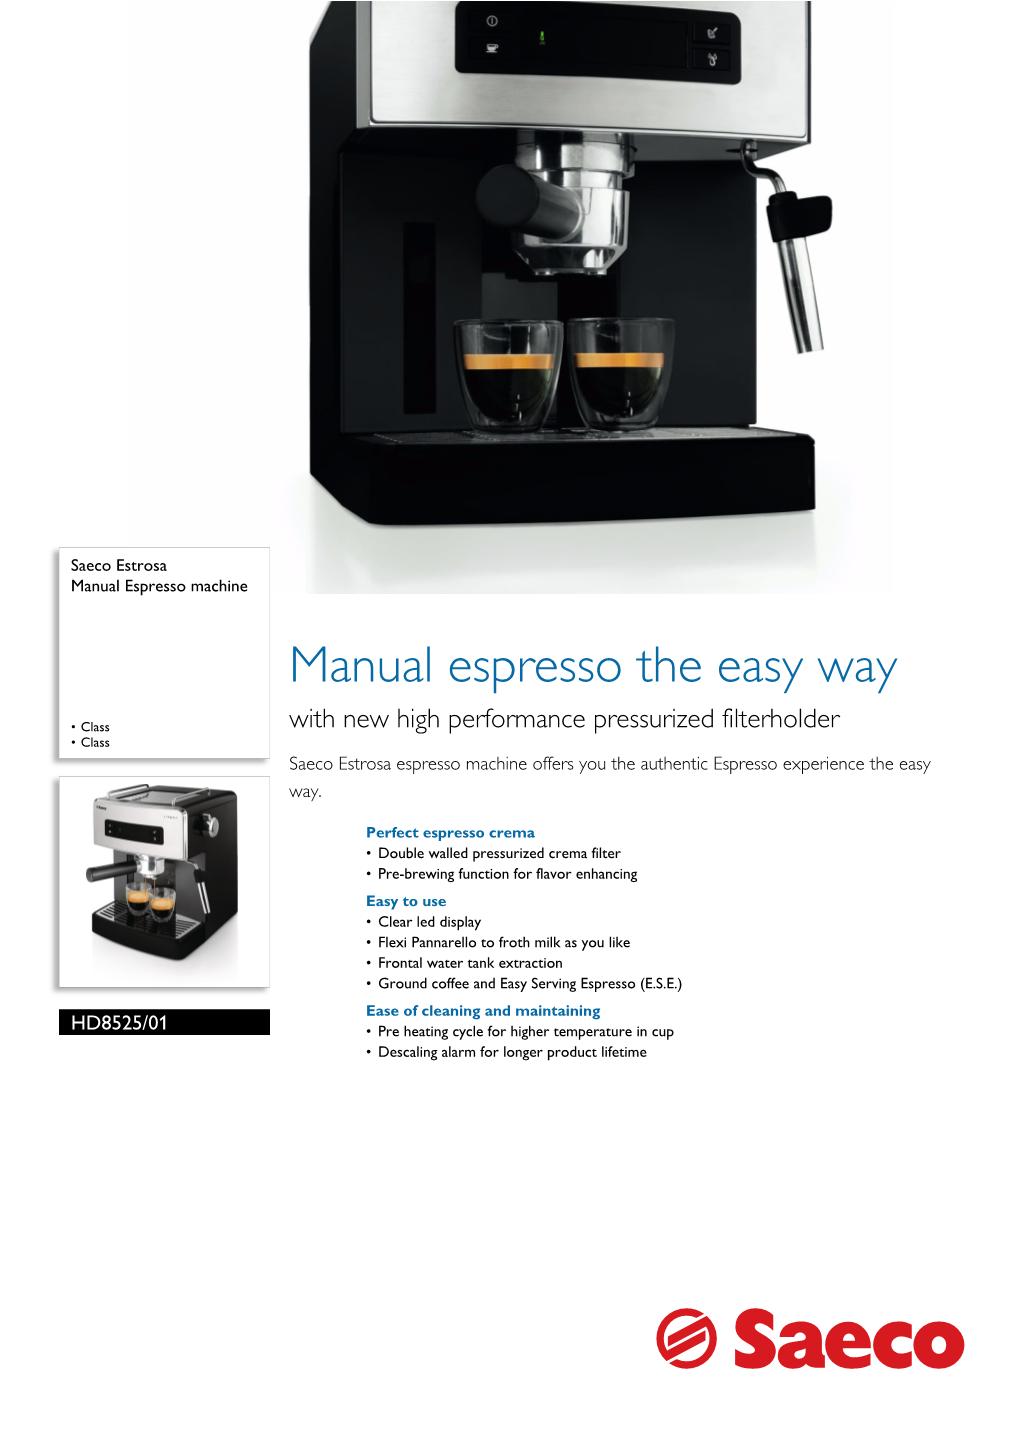 HD8525/01 Saeco Manual Espresso Machine